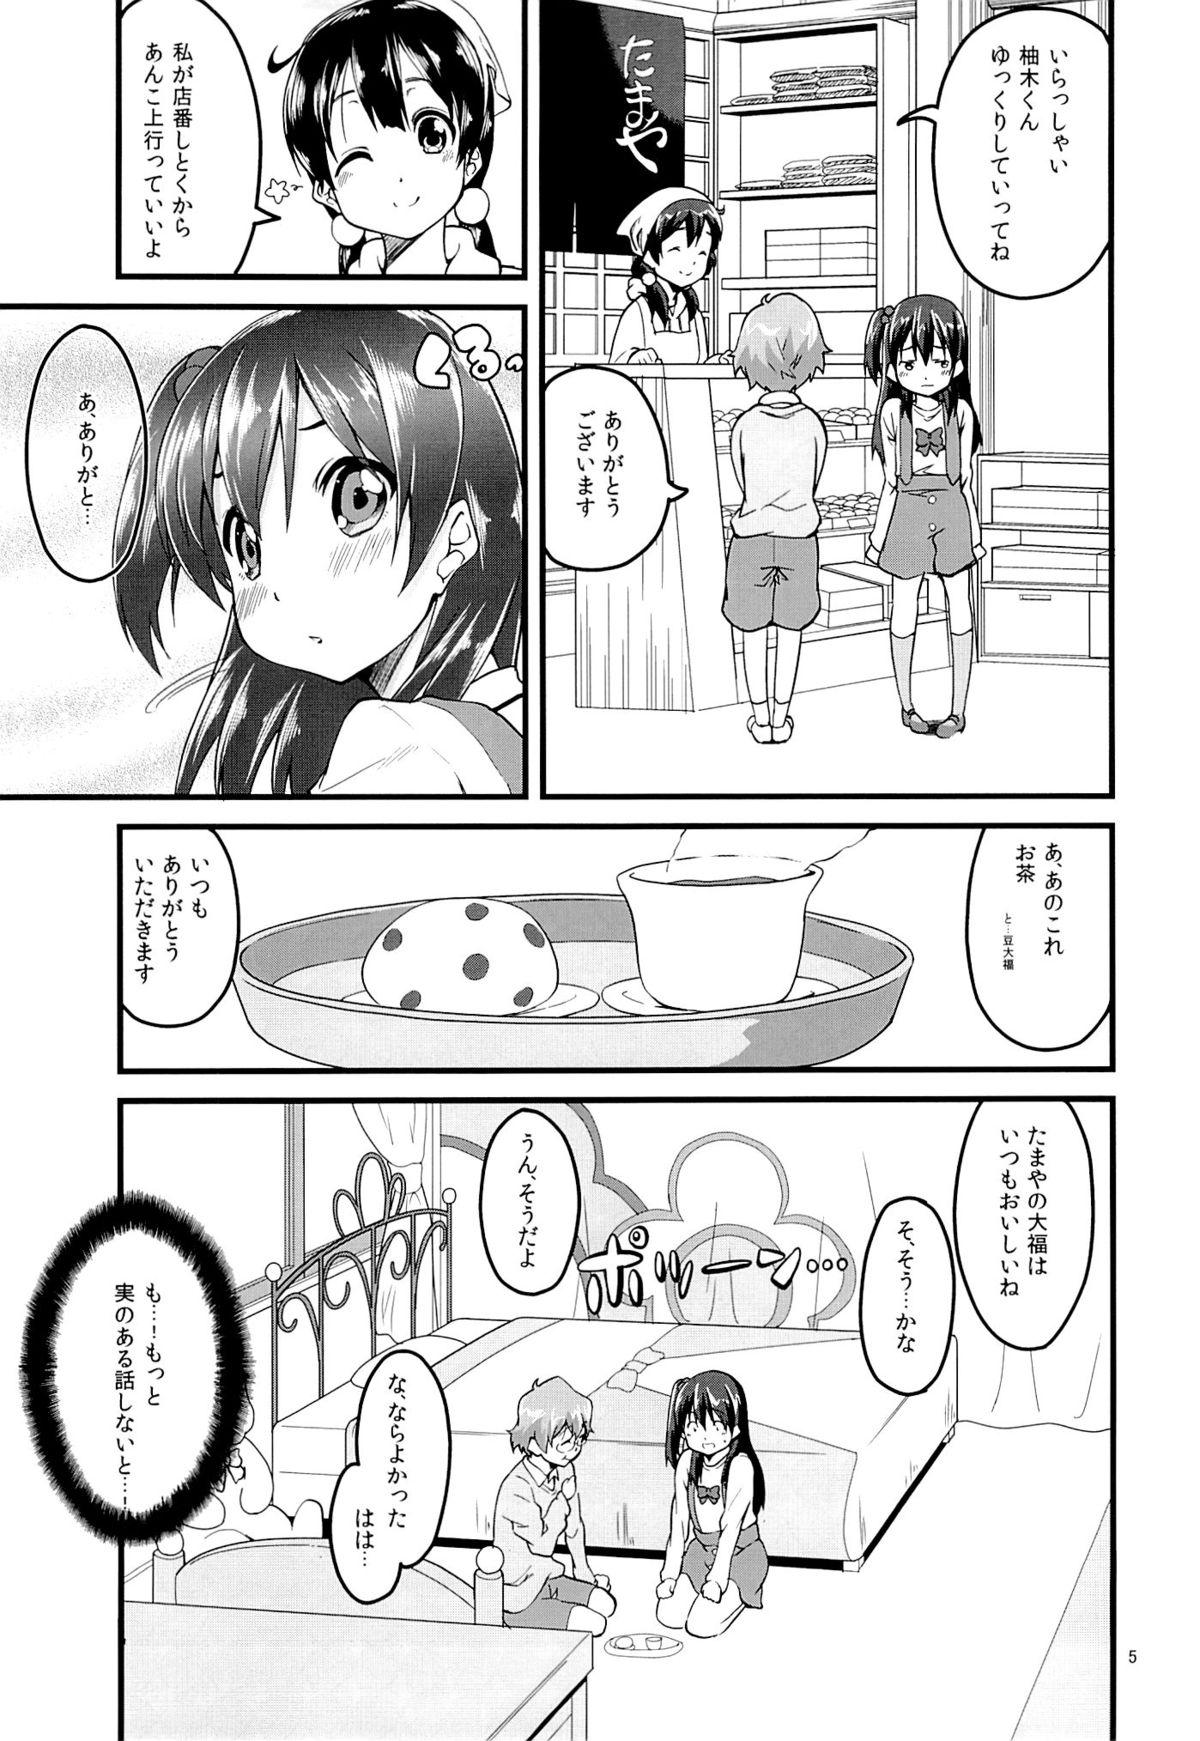 Legs Korekara wa Anko demo Iiyo? - Tamako market Mediumtits - Page 4